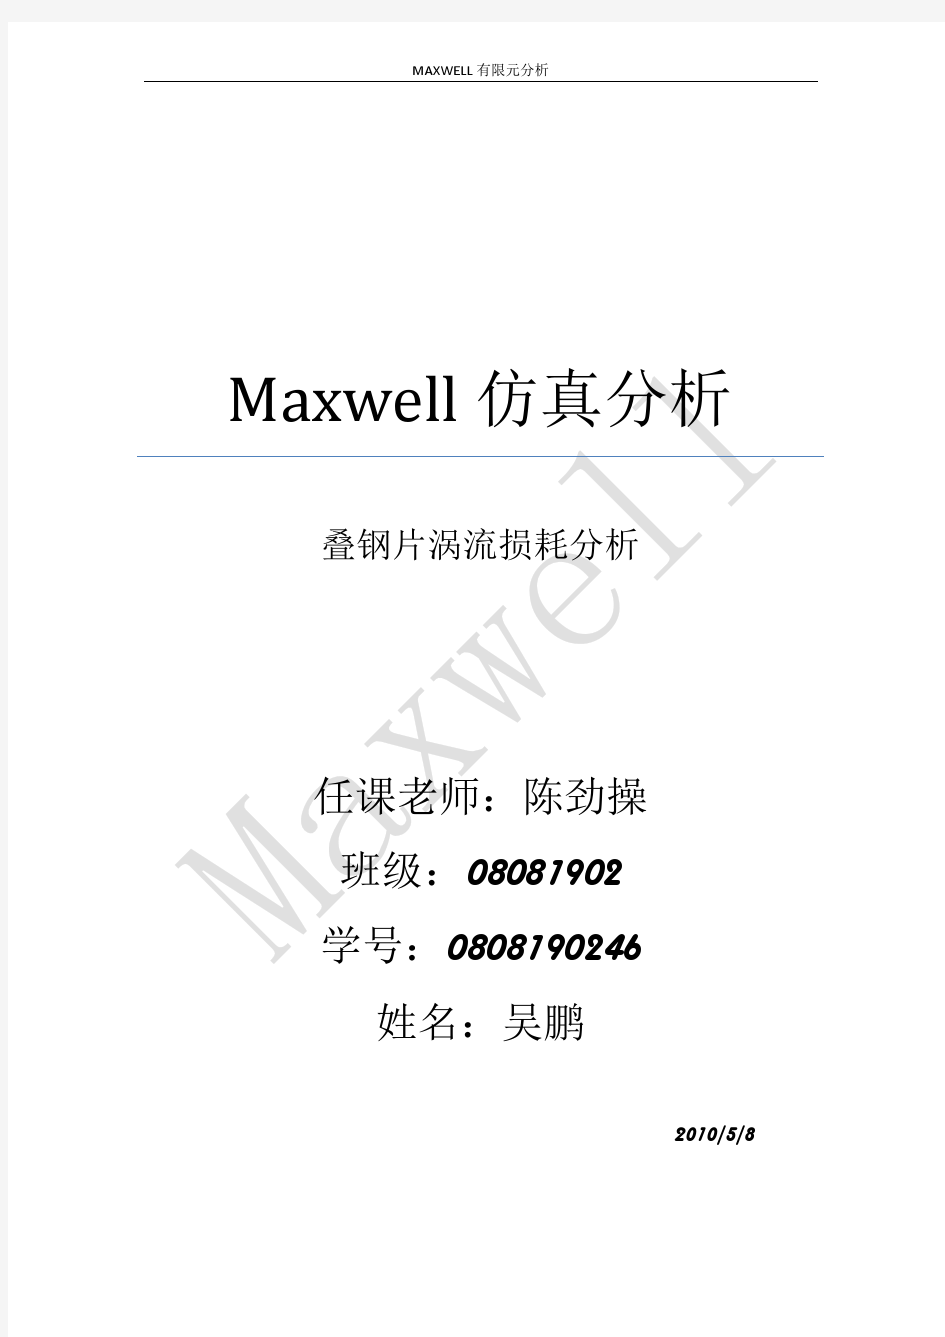 工程电磁场报告——maxwell